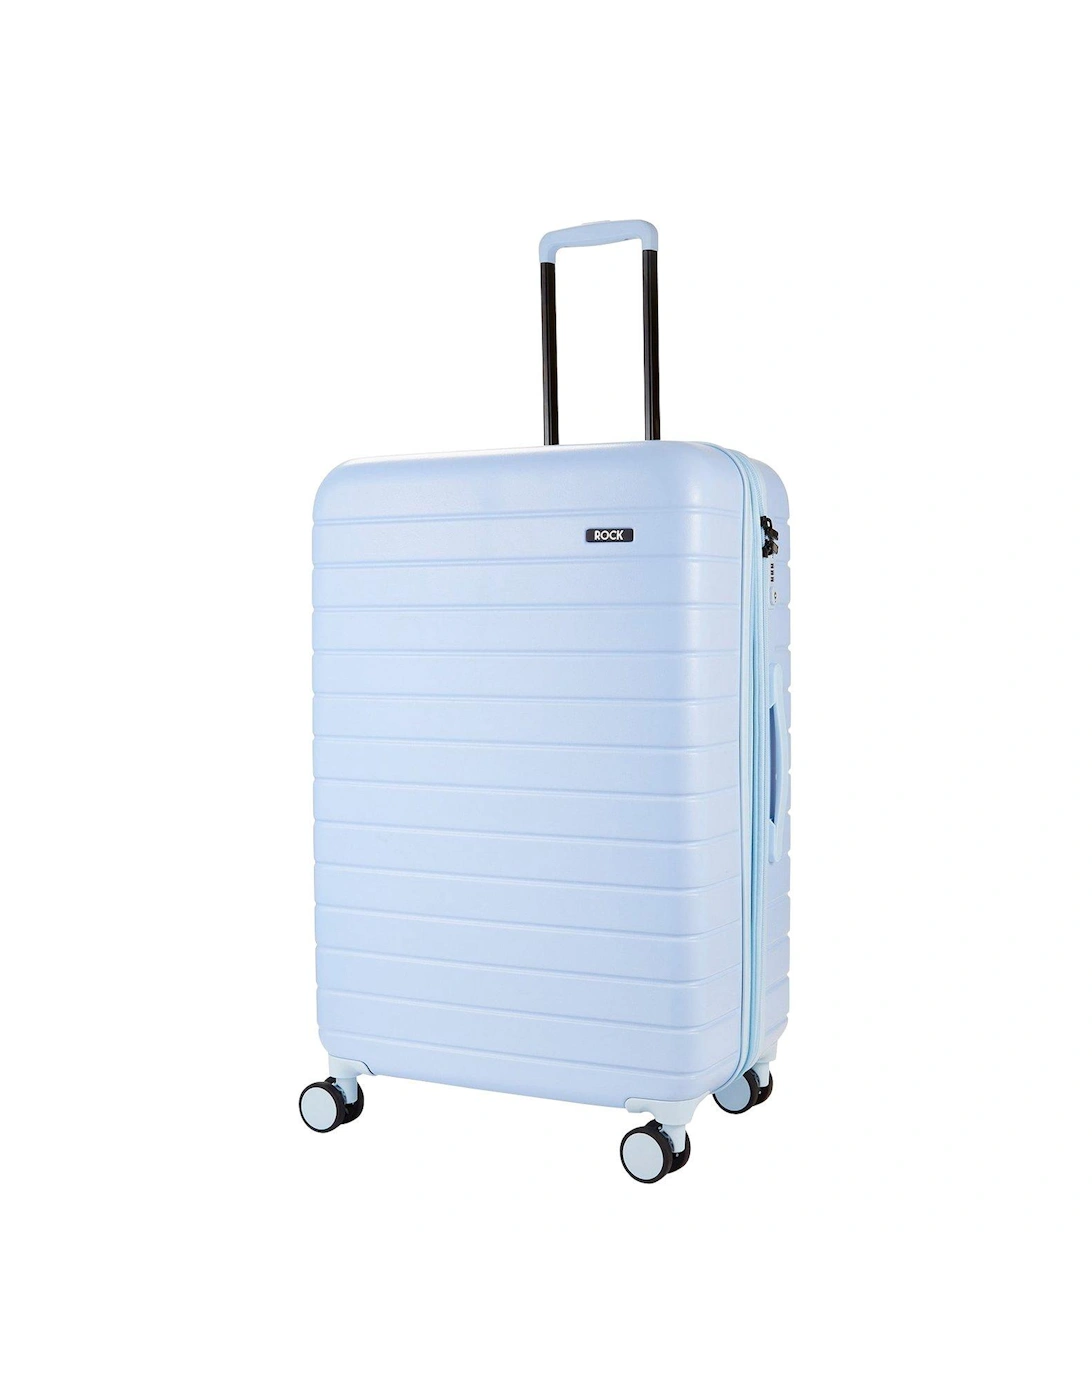 Novo Large 8-Wheel Suitcase - Pastel Blue, 2 of 1